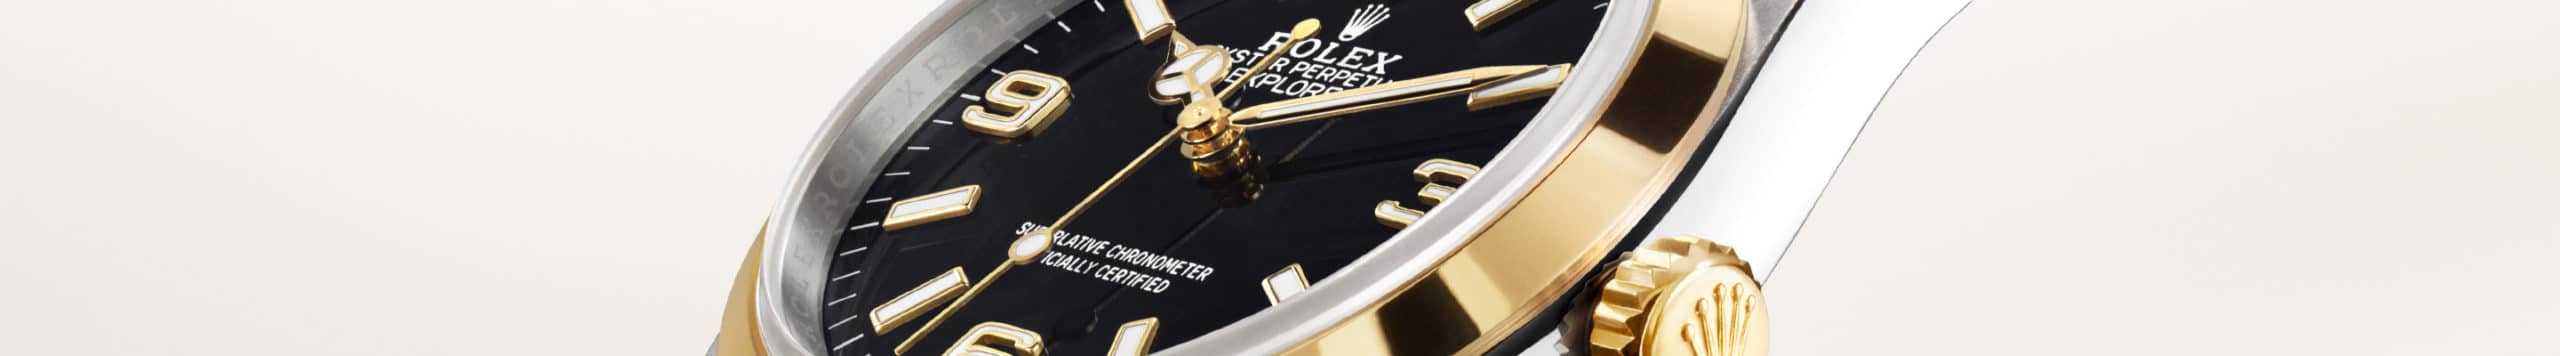 นาฬิกา Rolex Explorer ที่ ไทม์ ไมดาส สยามพารากอน